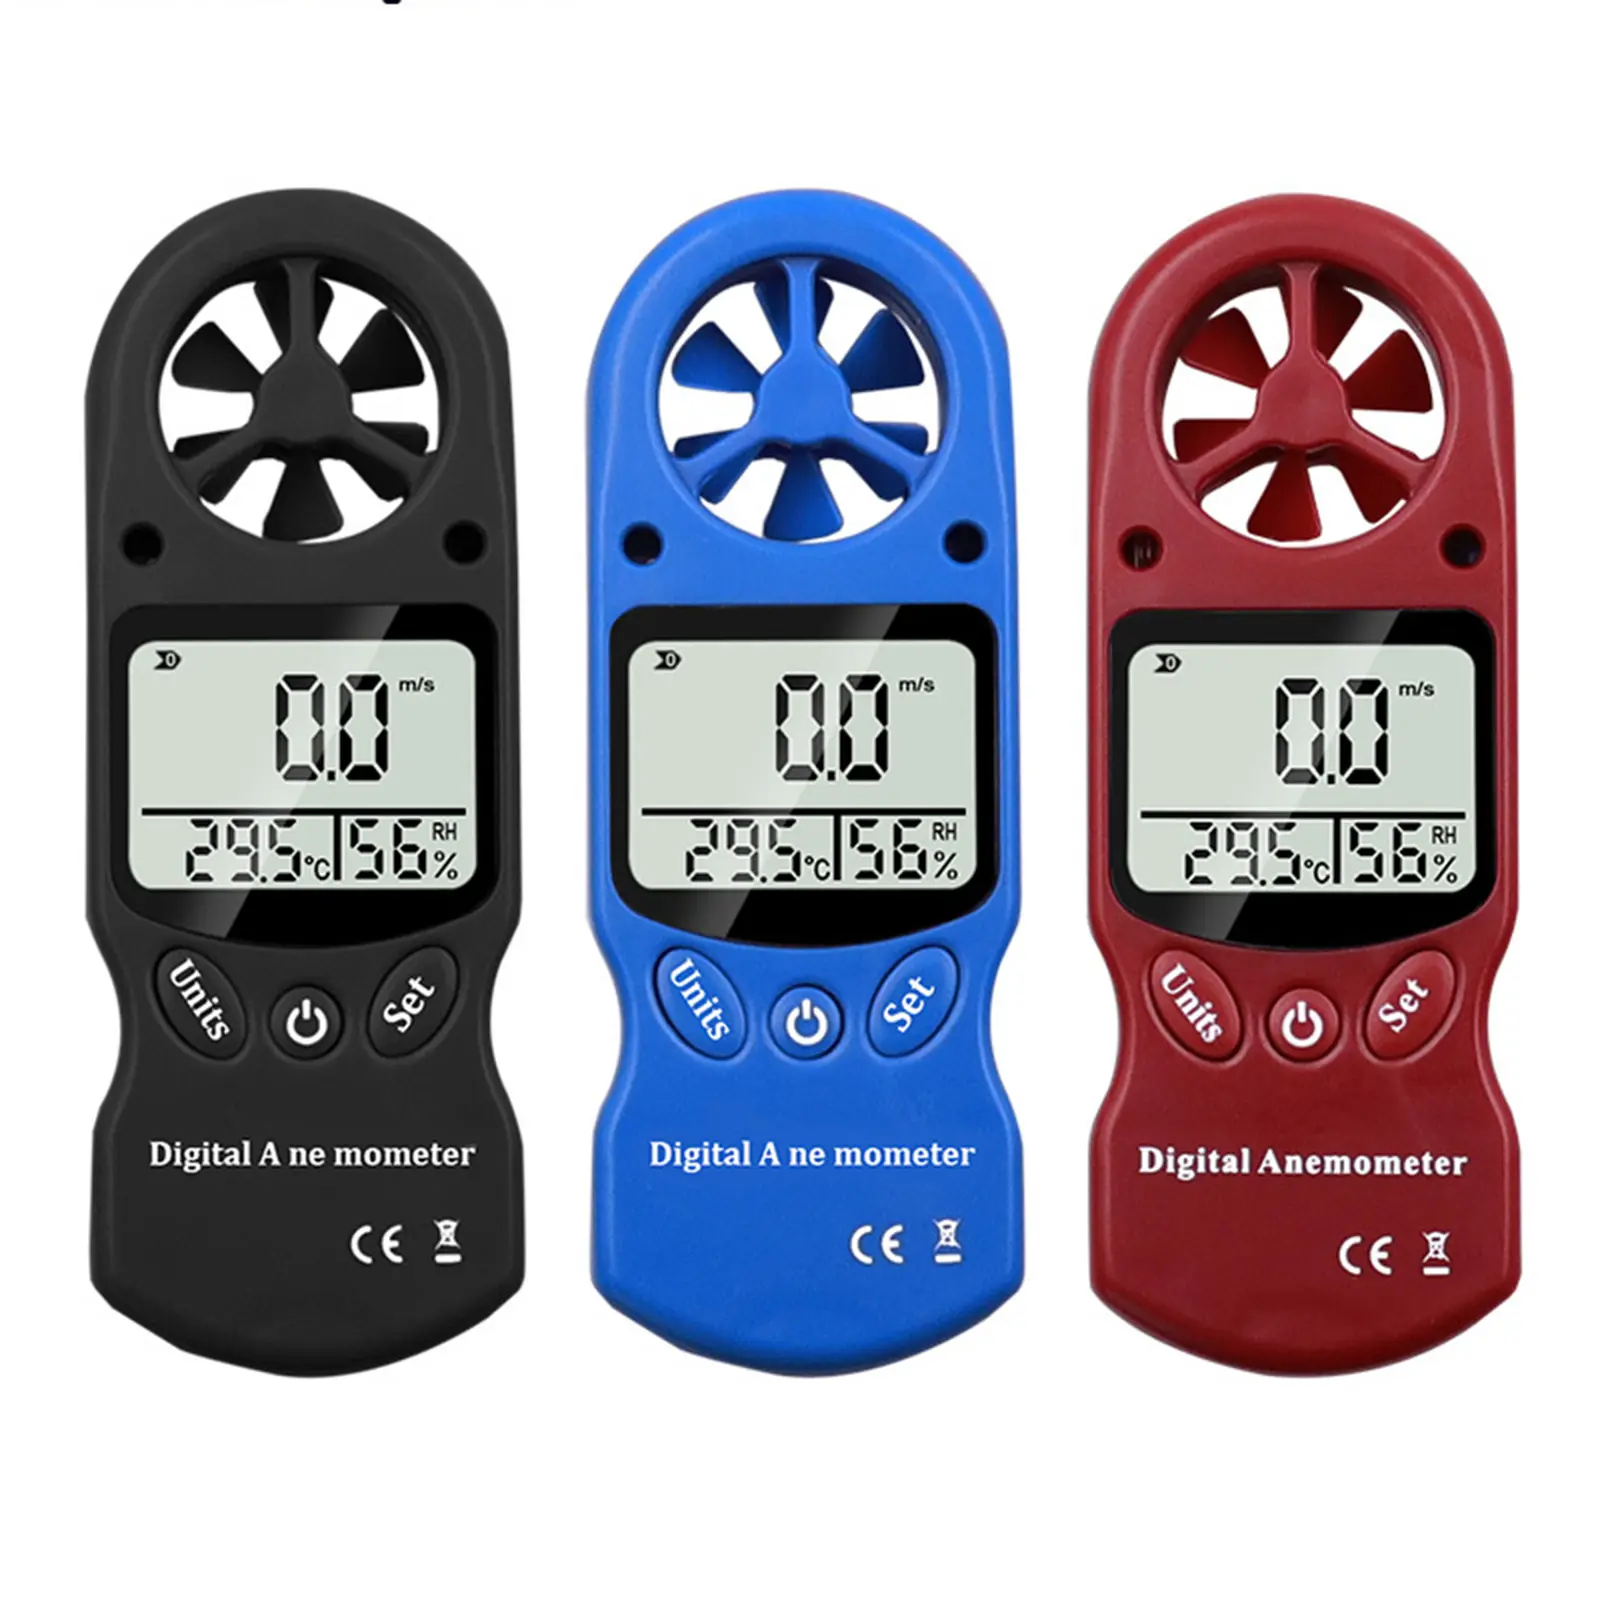 Mini termômetro digital portátil multifunção, medidor de velocidade do vento, anemômetro e higrômetro